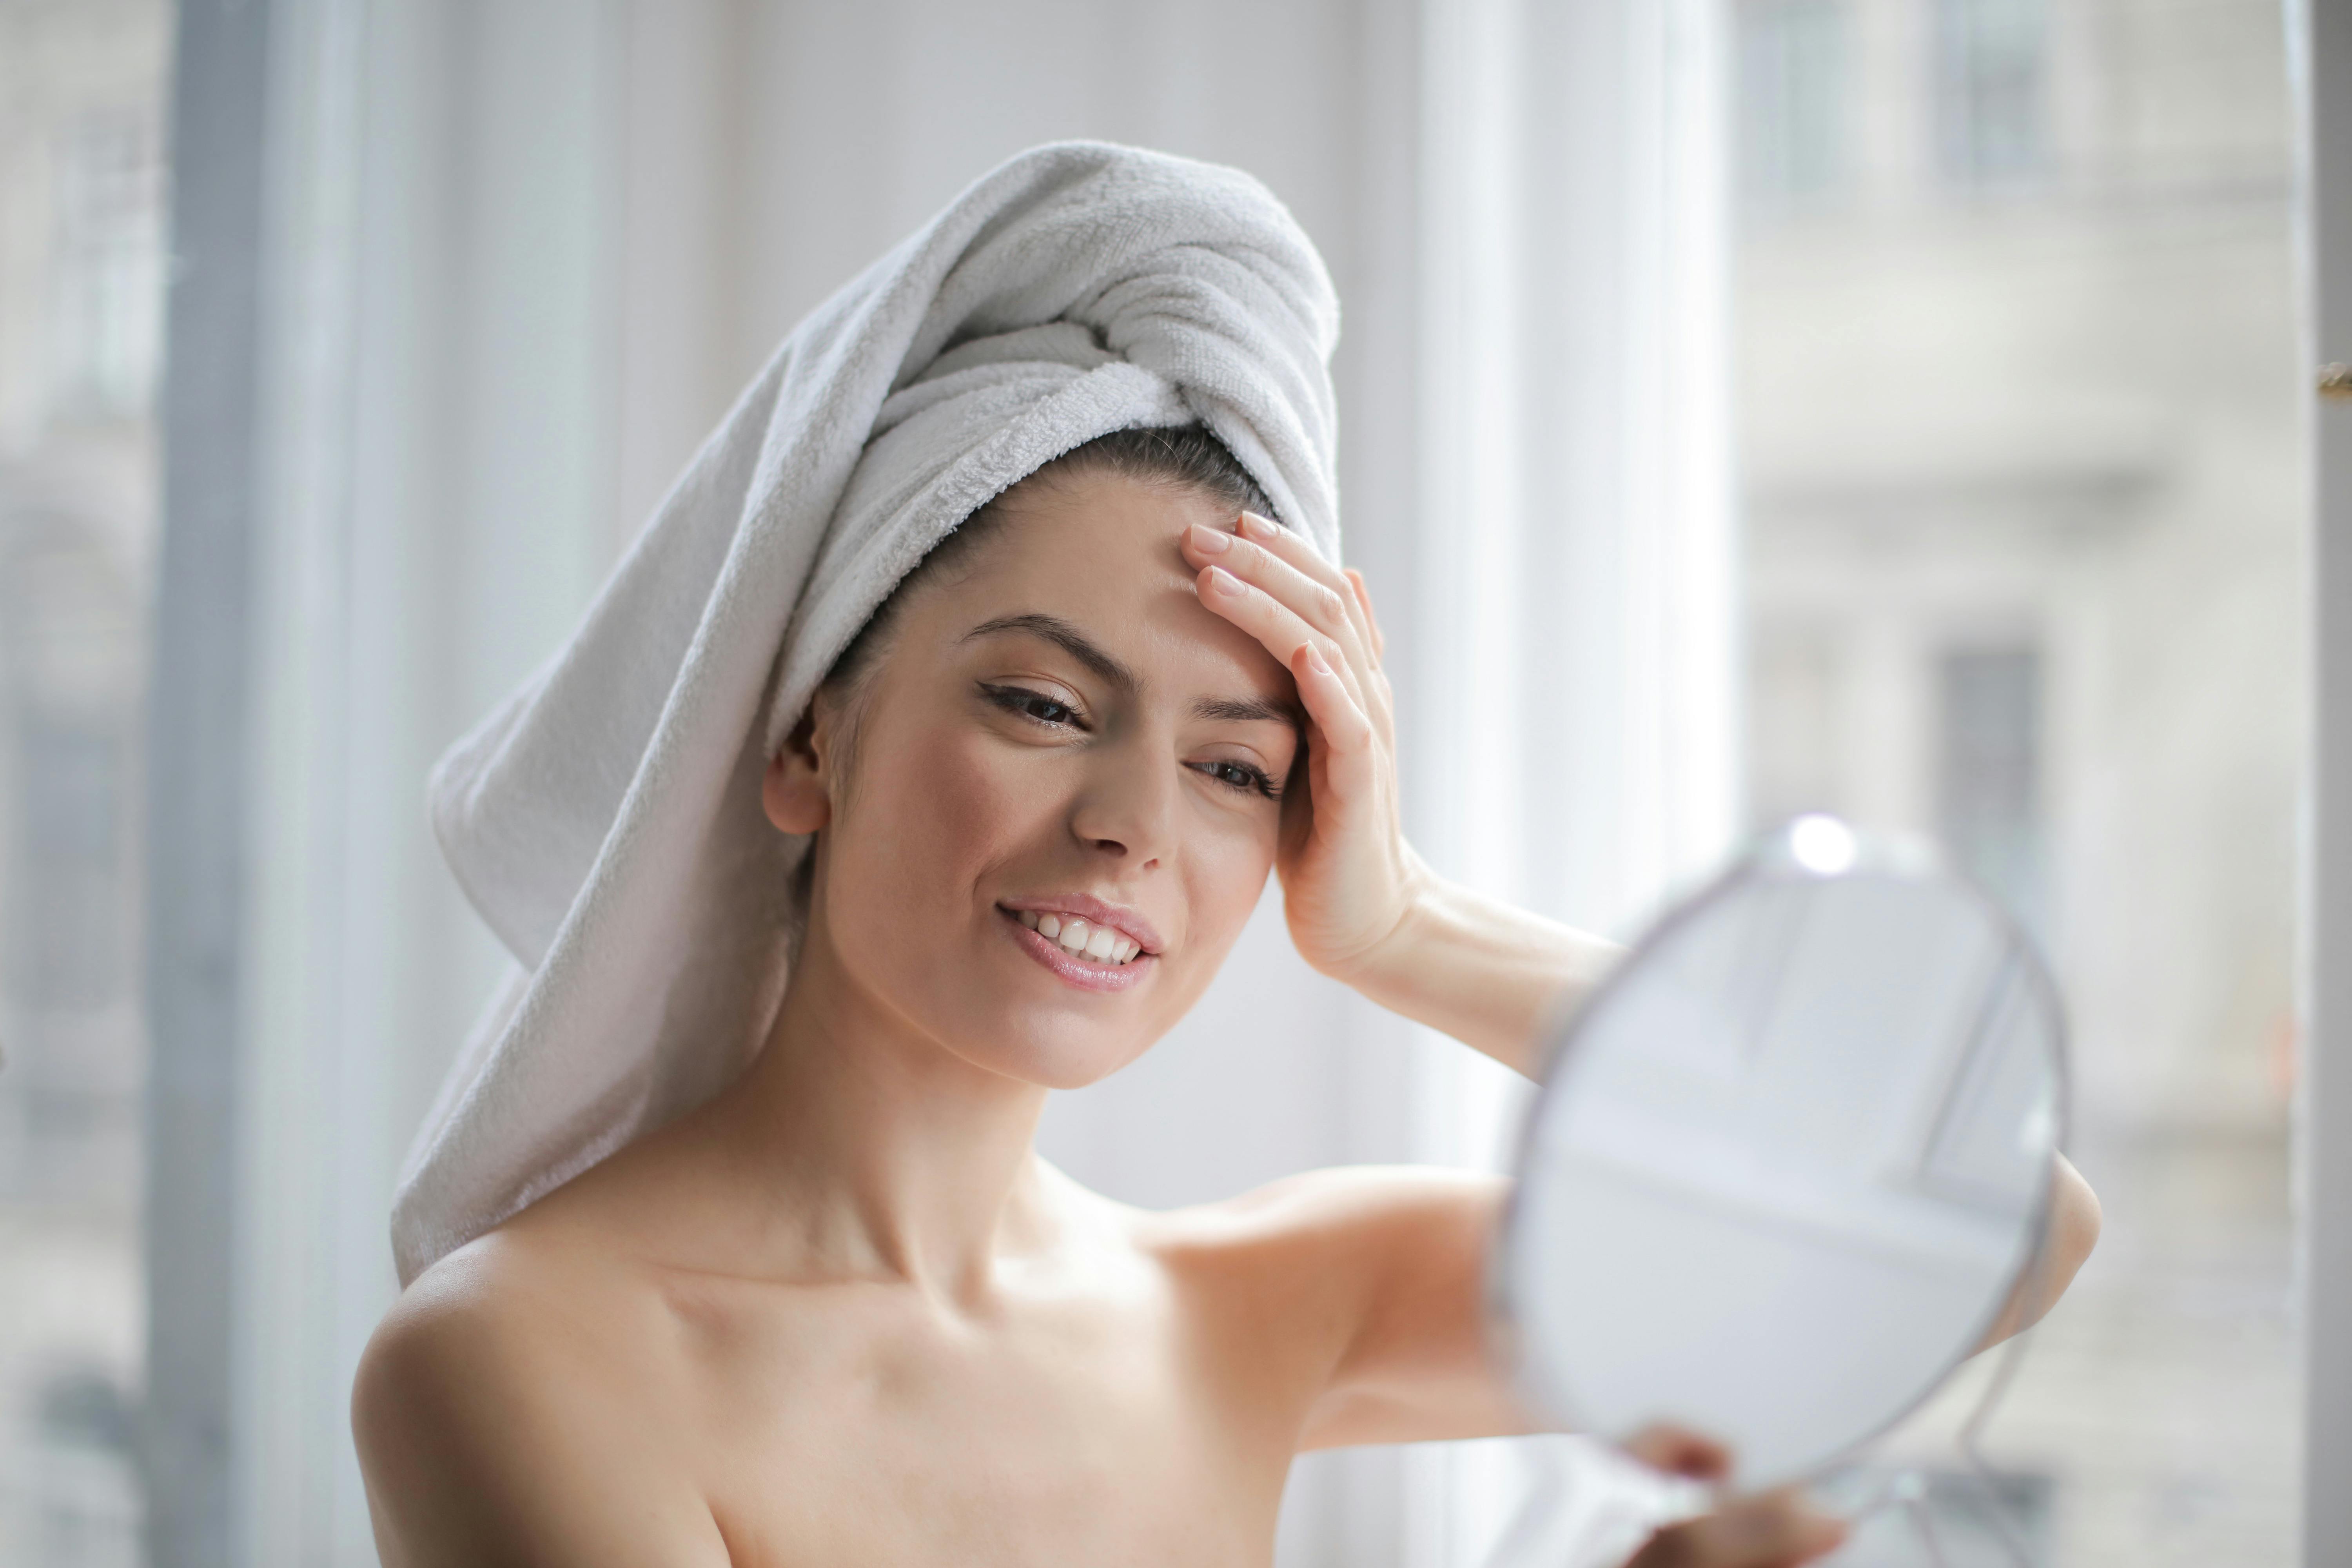 Une femme heureuse se regardant dans le miroir tout en portant une serviette pour se sécher les cheveux | Source : Pexels